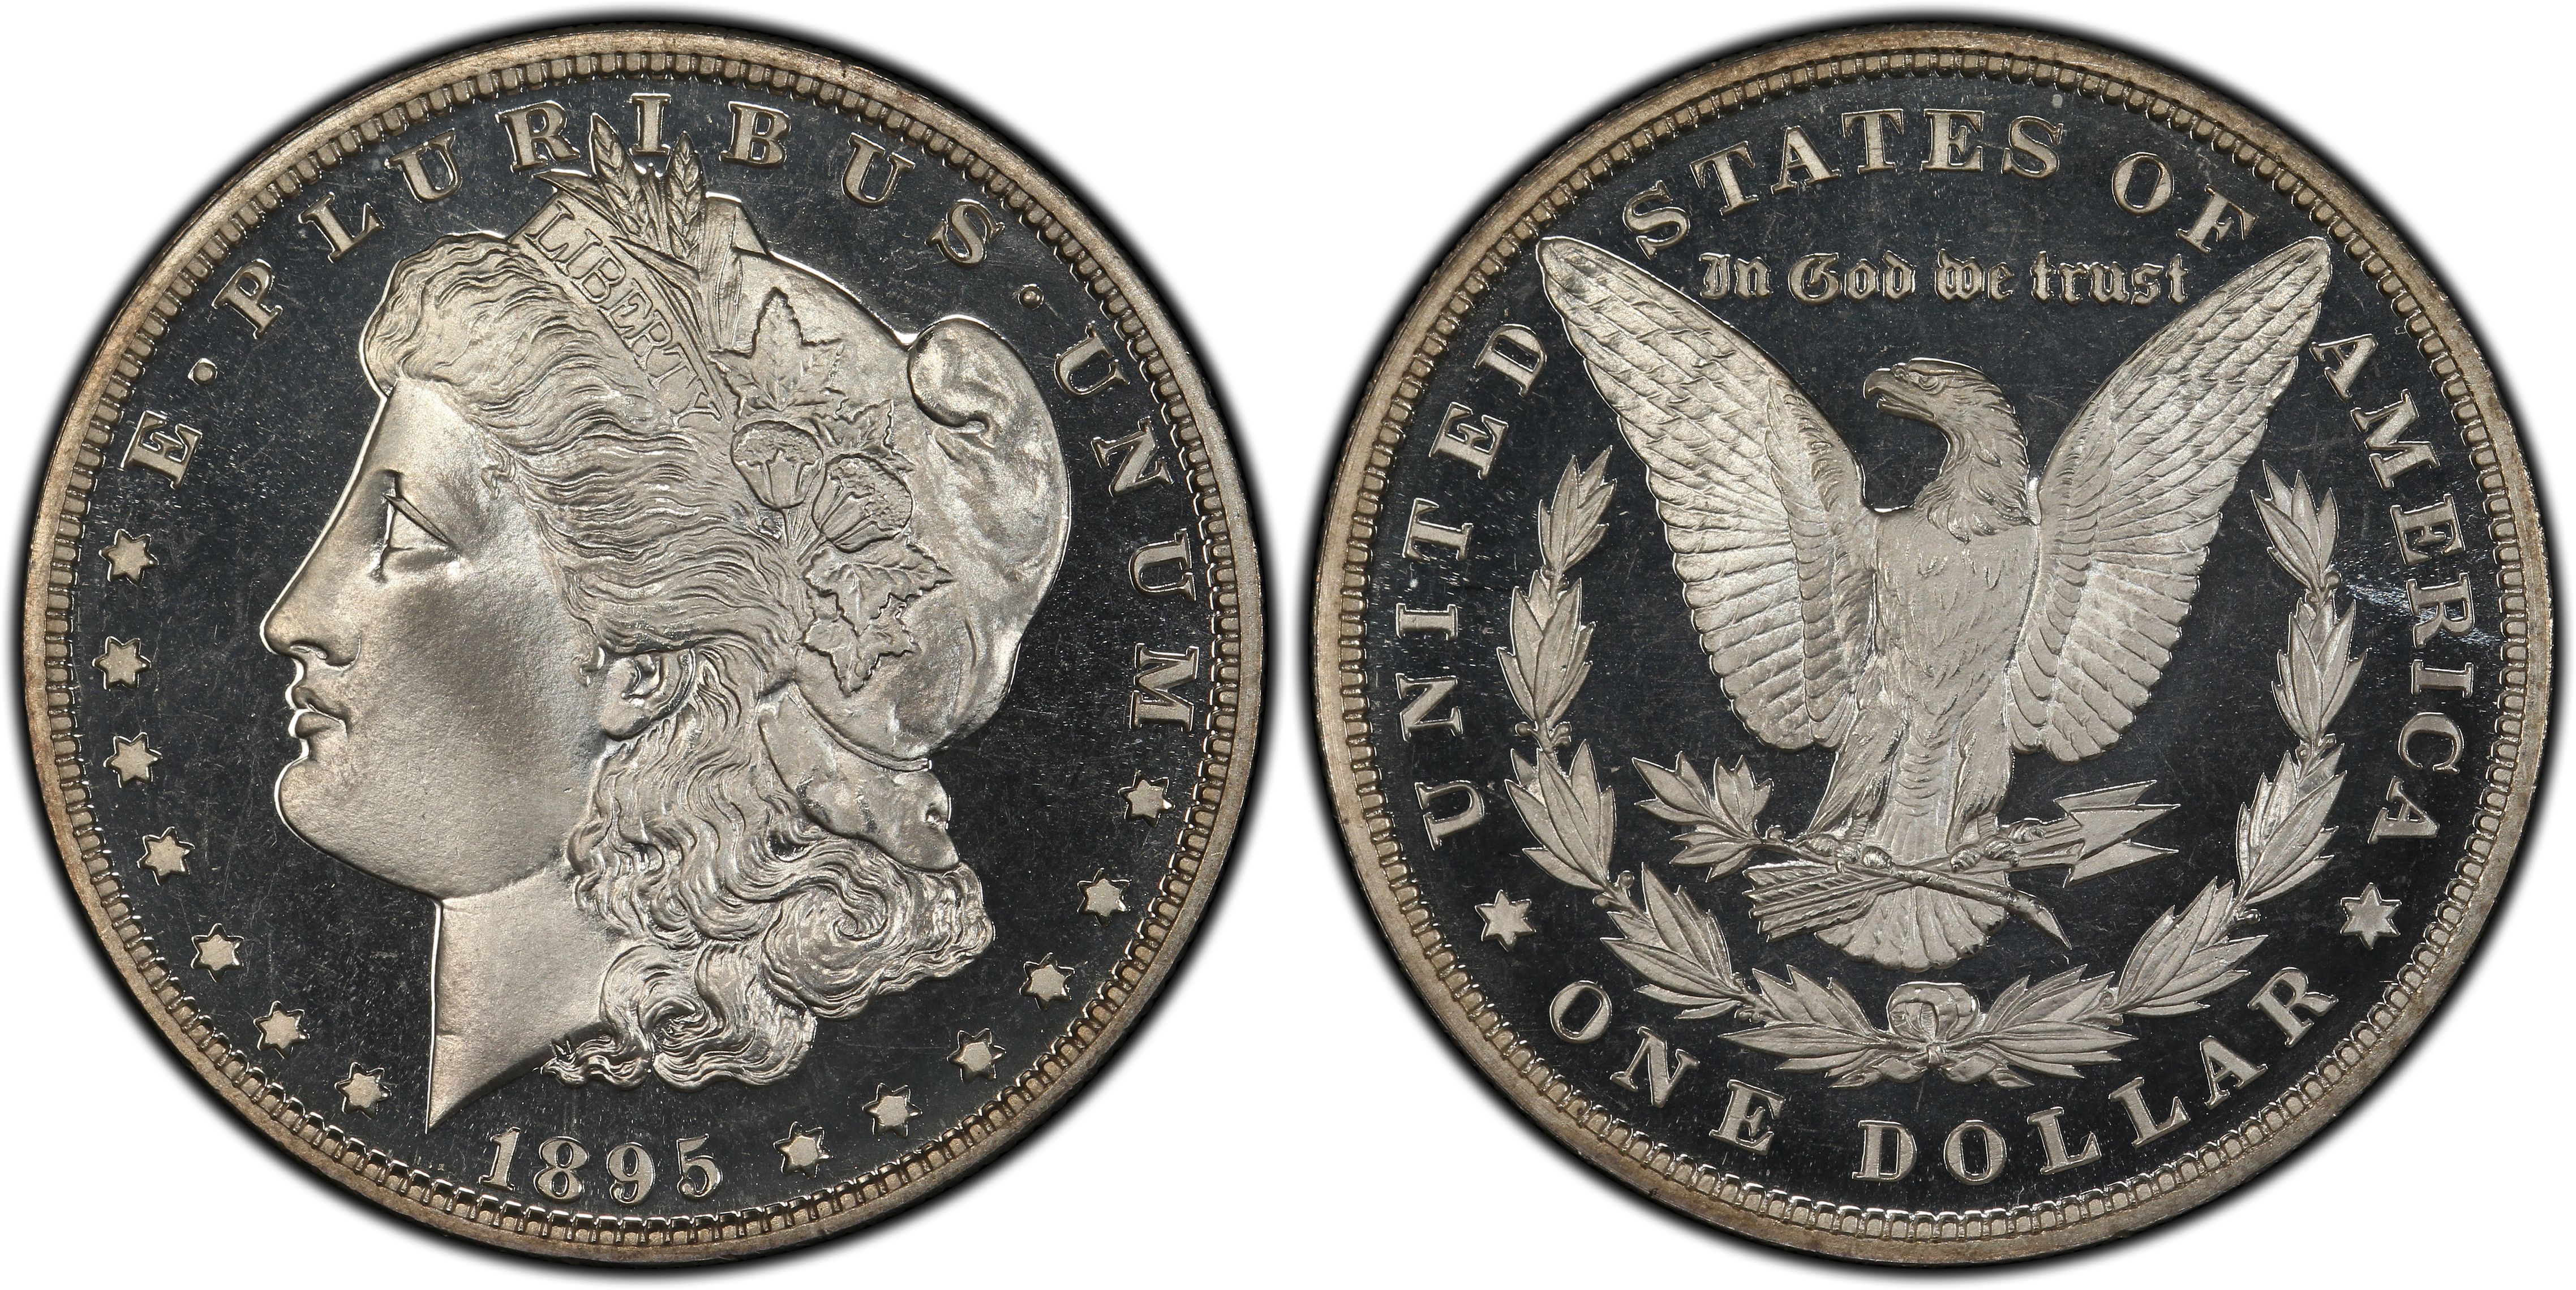 1895 Morgan Dollar Coin Token Not Silver Souvenir Money Clip Gift Box! 